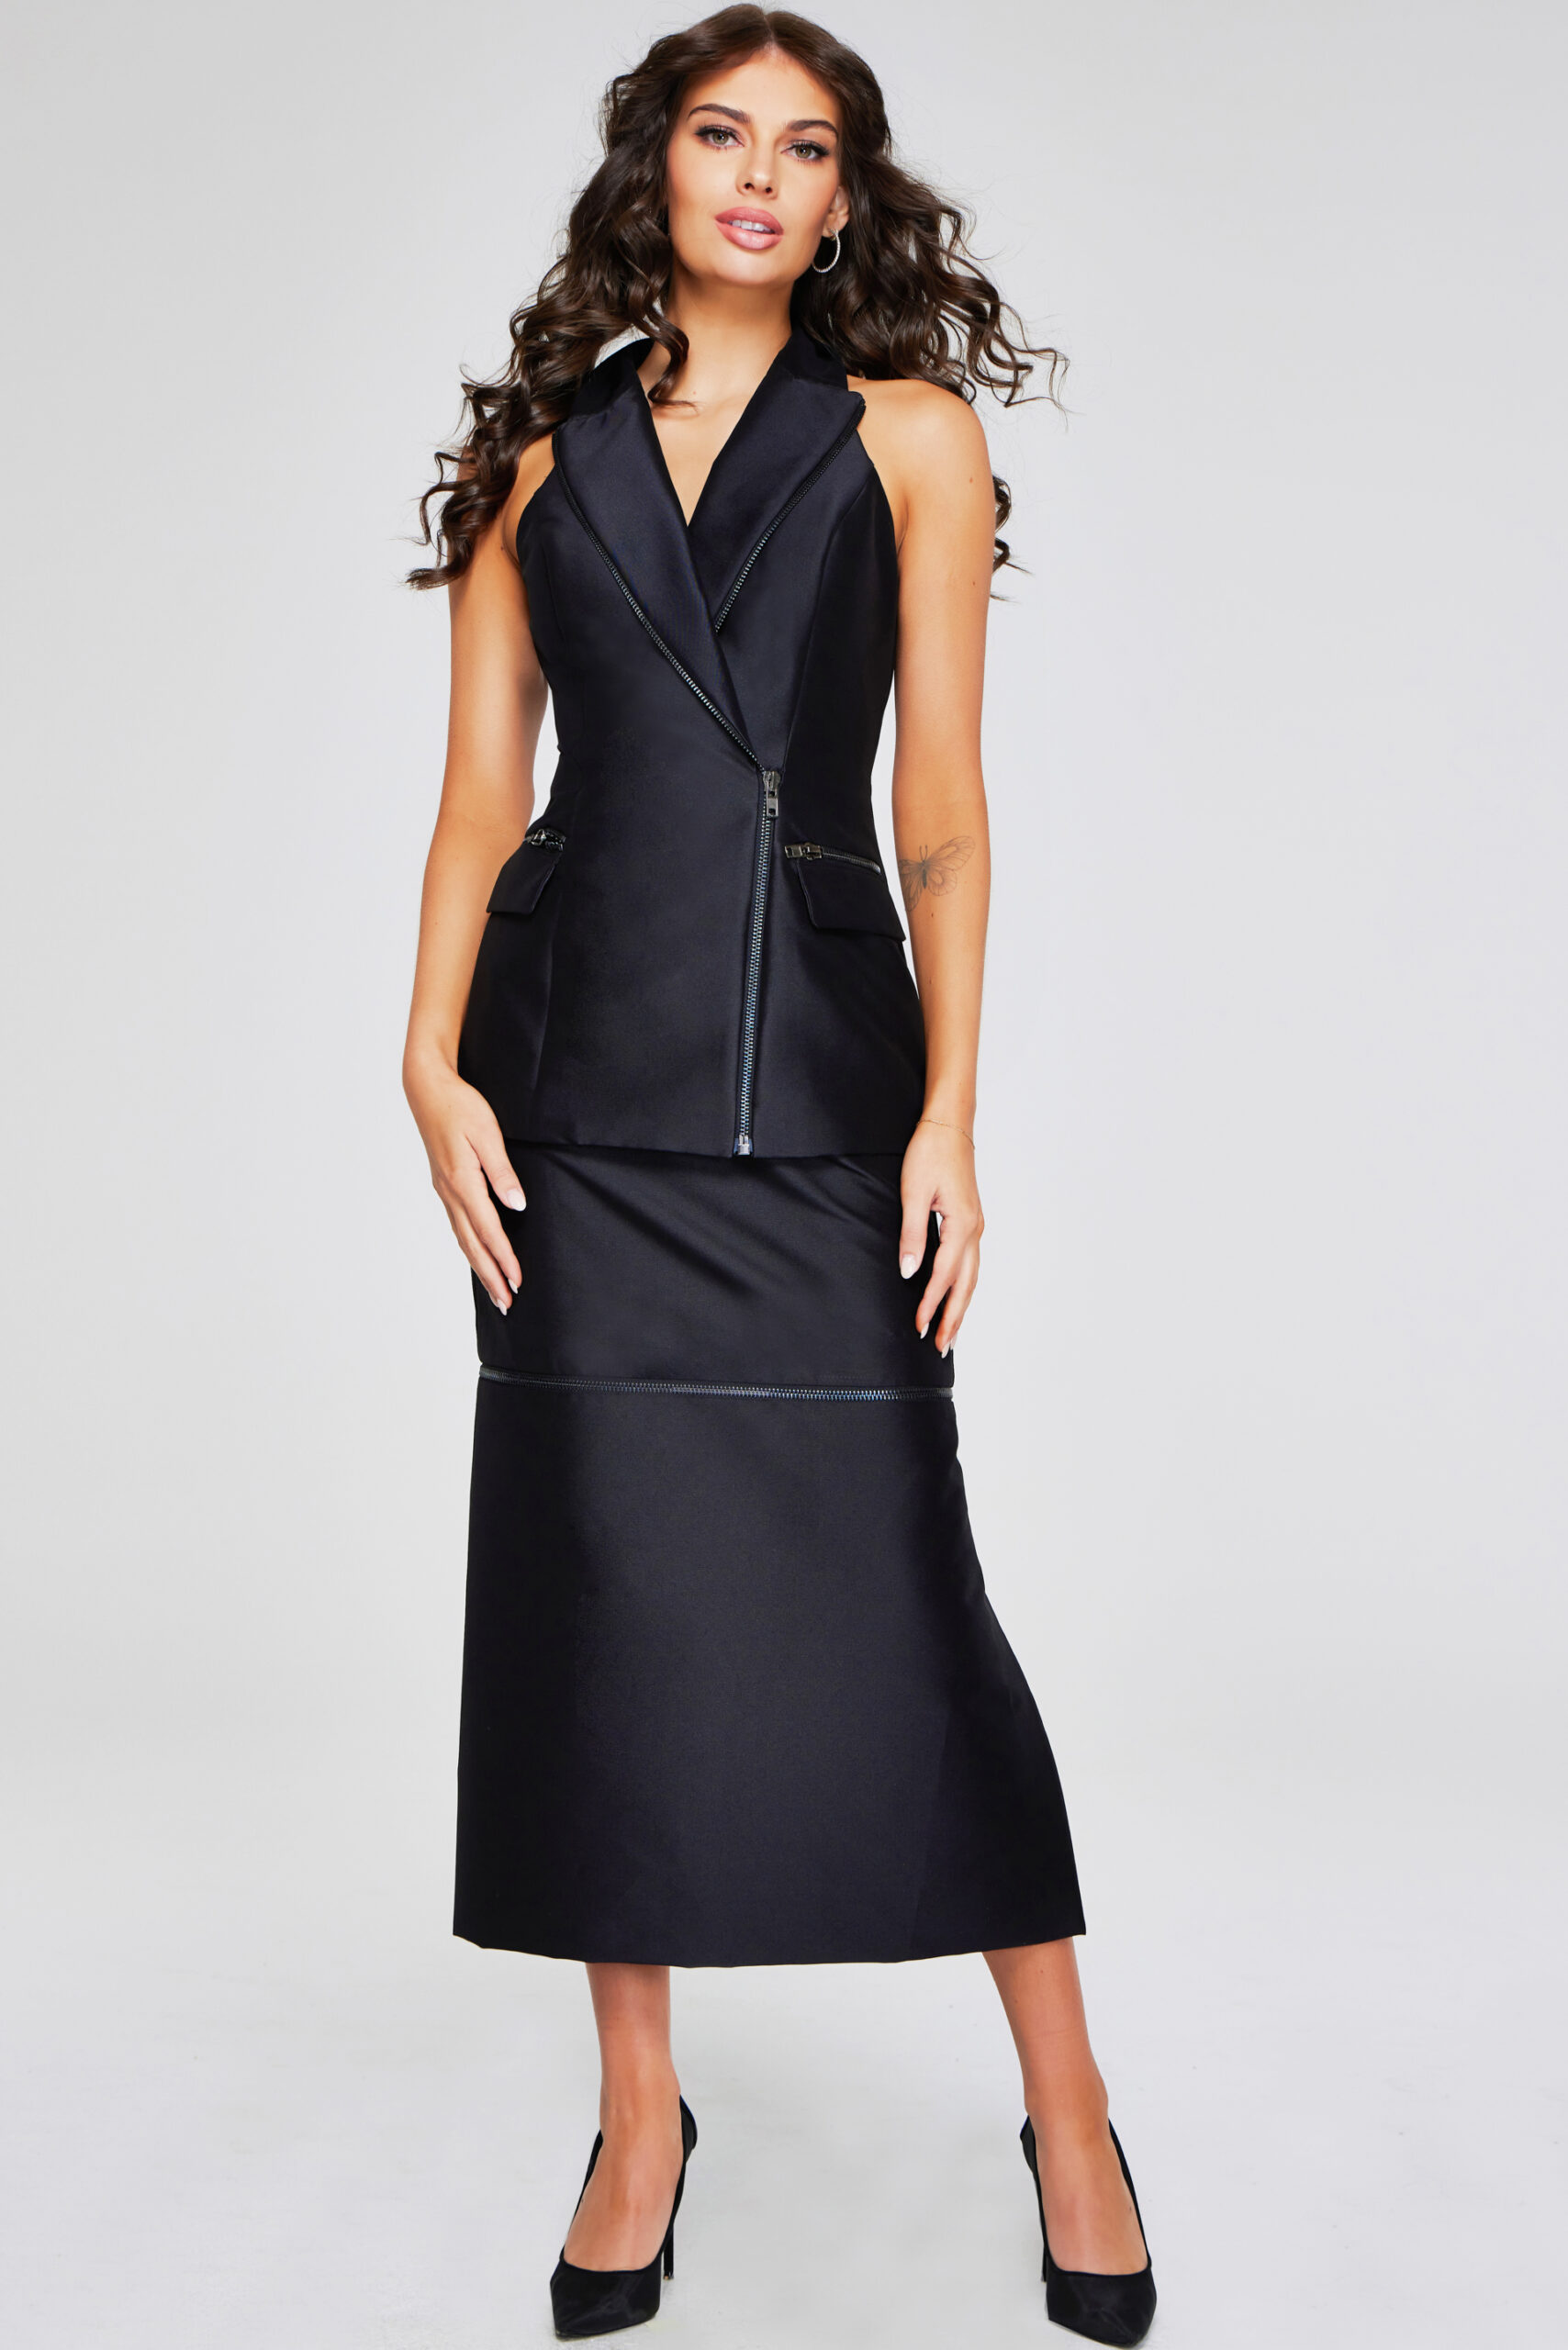 Model wearing Black Zipper Detail Dress 39801